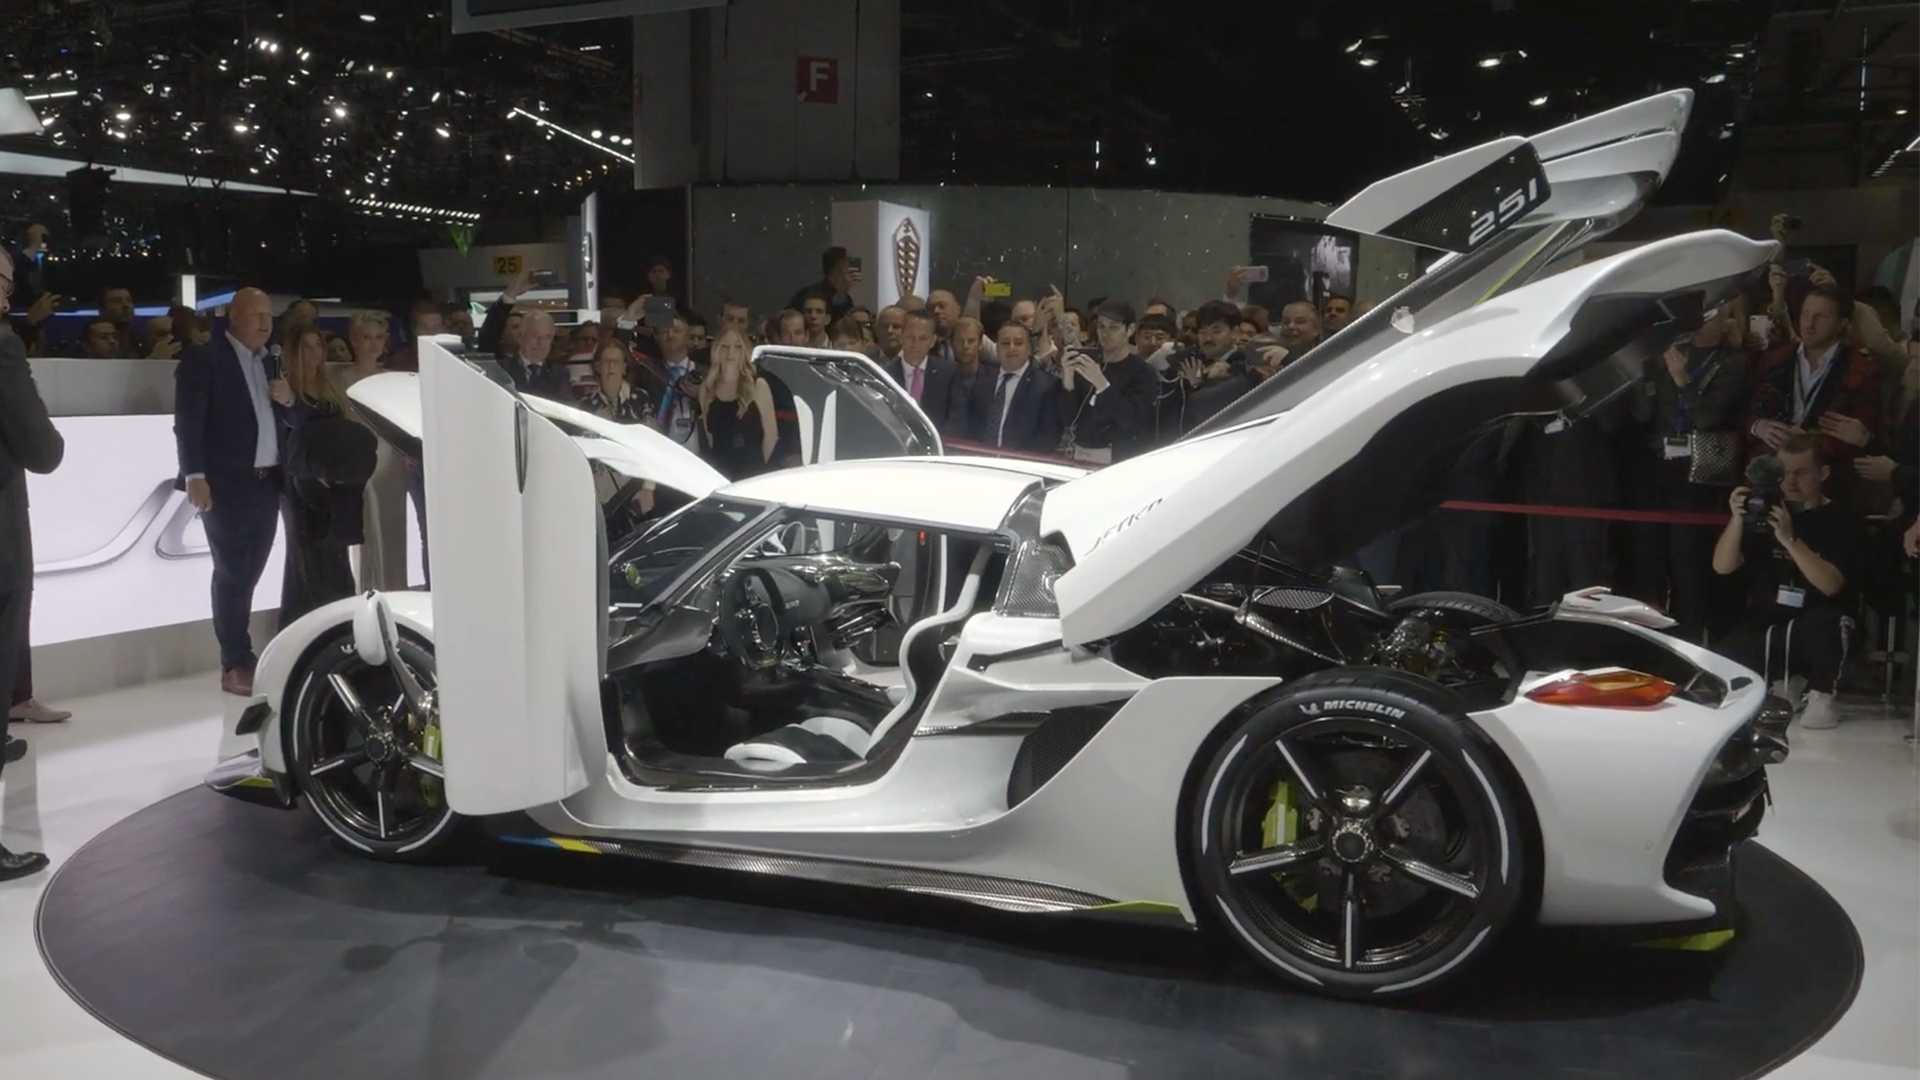 18-کونیگ زگ  جسکو در نمایشگاه خودروی ژنو 2019 رونمایی شد،هاپیر کاری با 482 کیلومتر